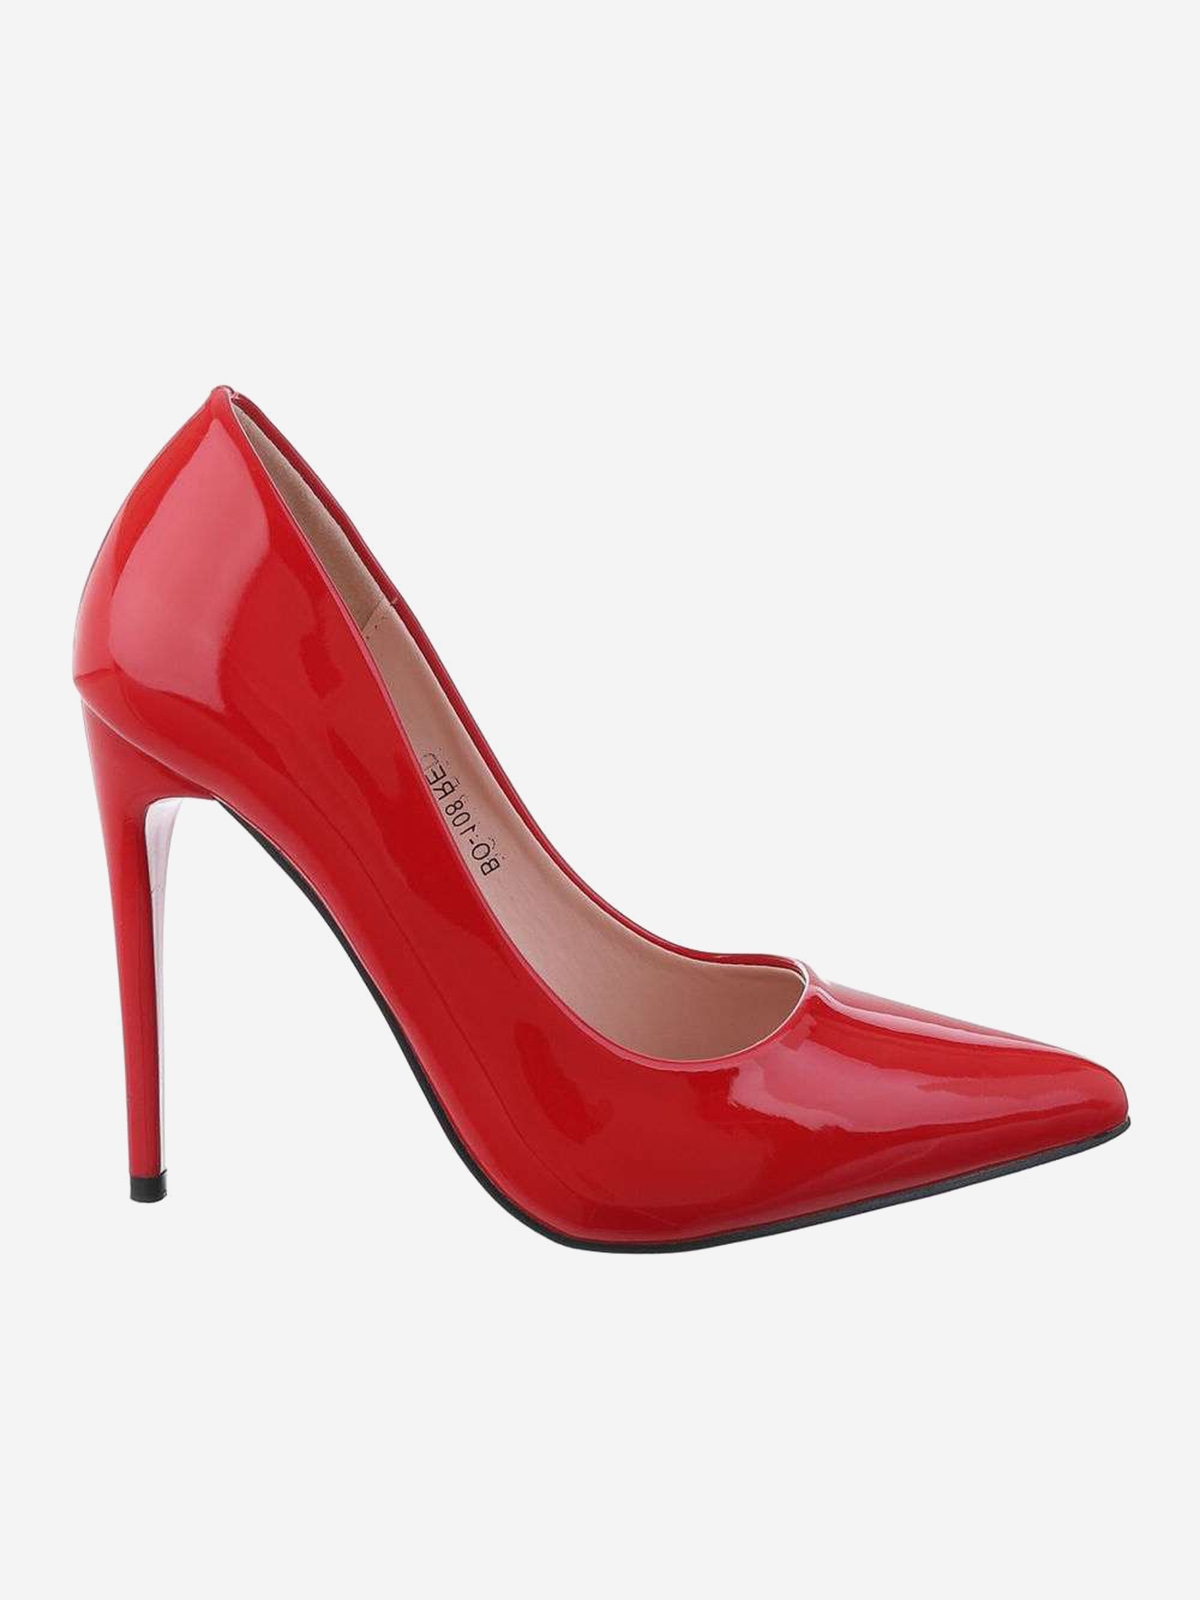 Moteriški aukštakulniai batai raudonos spalvos